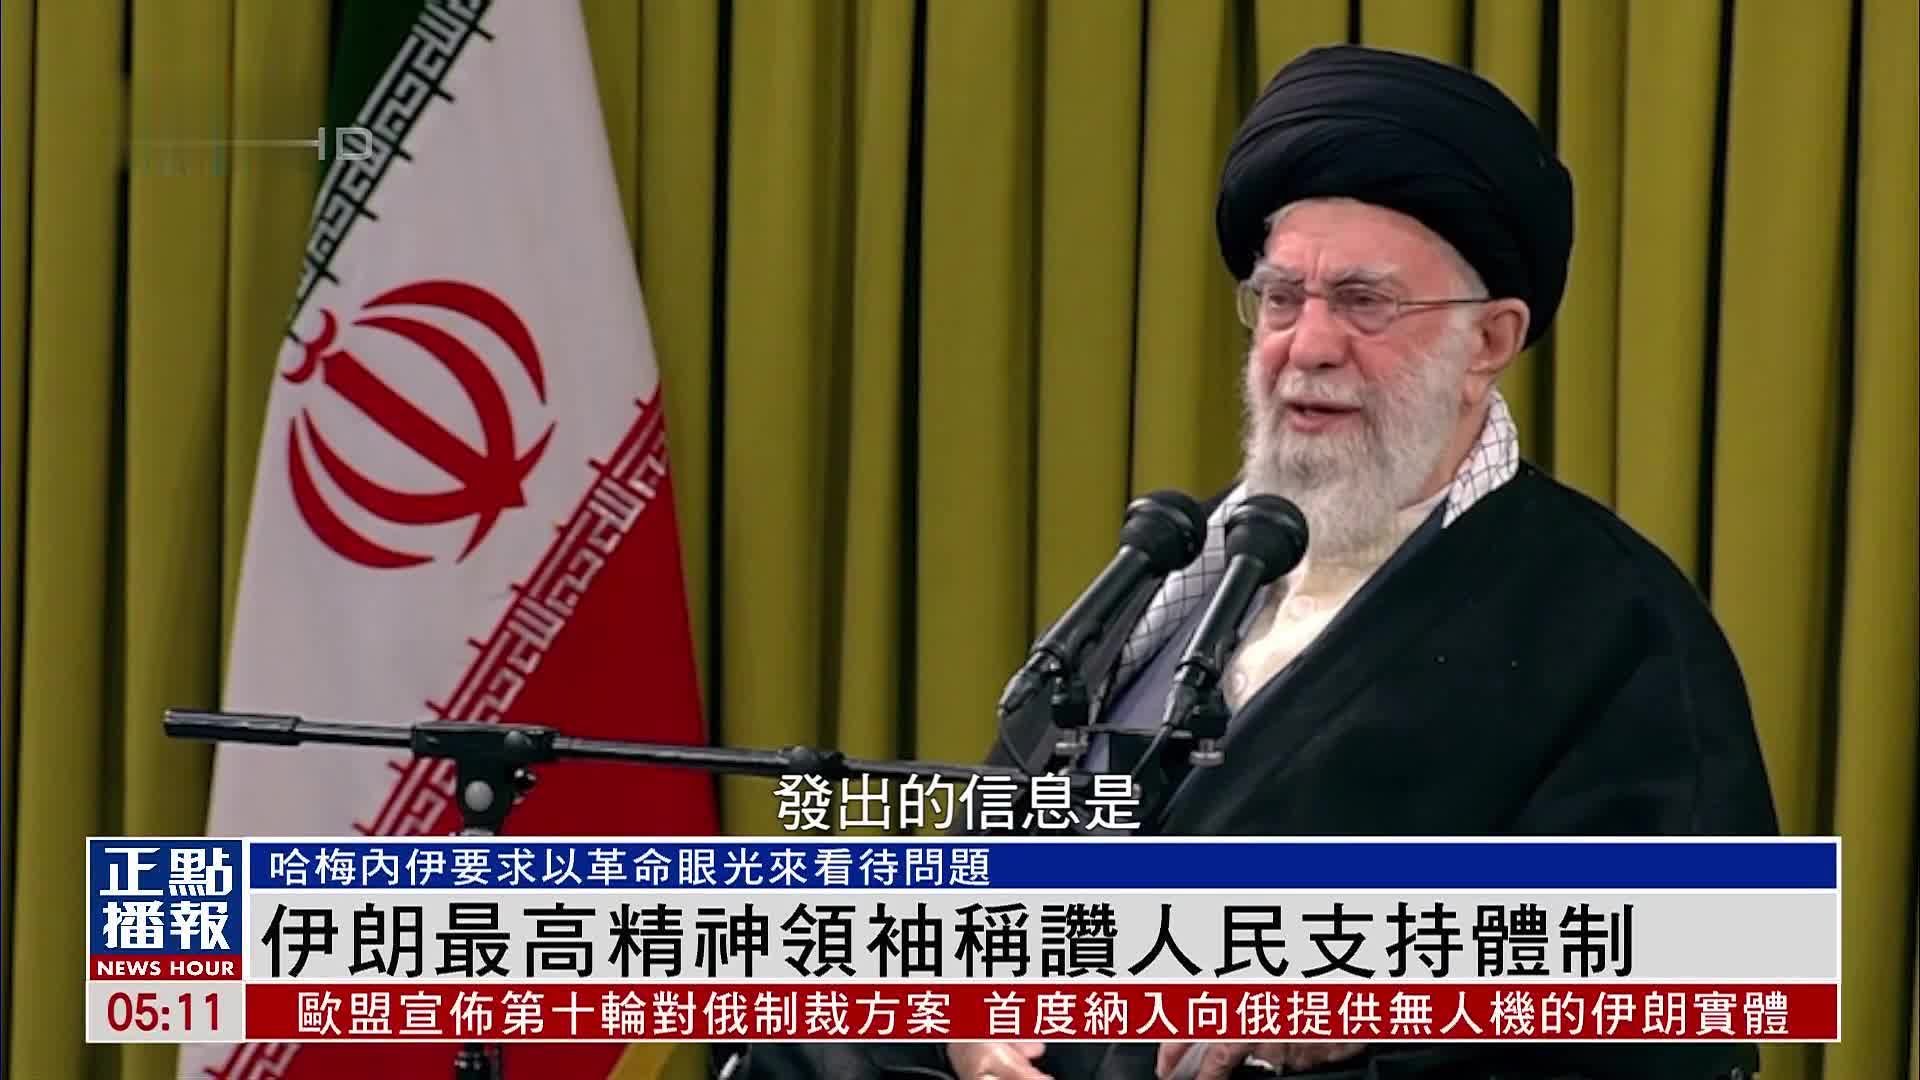 伊朗最高精神领袖称赞人民支持体制